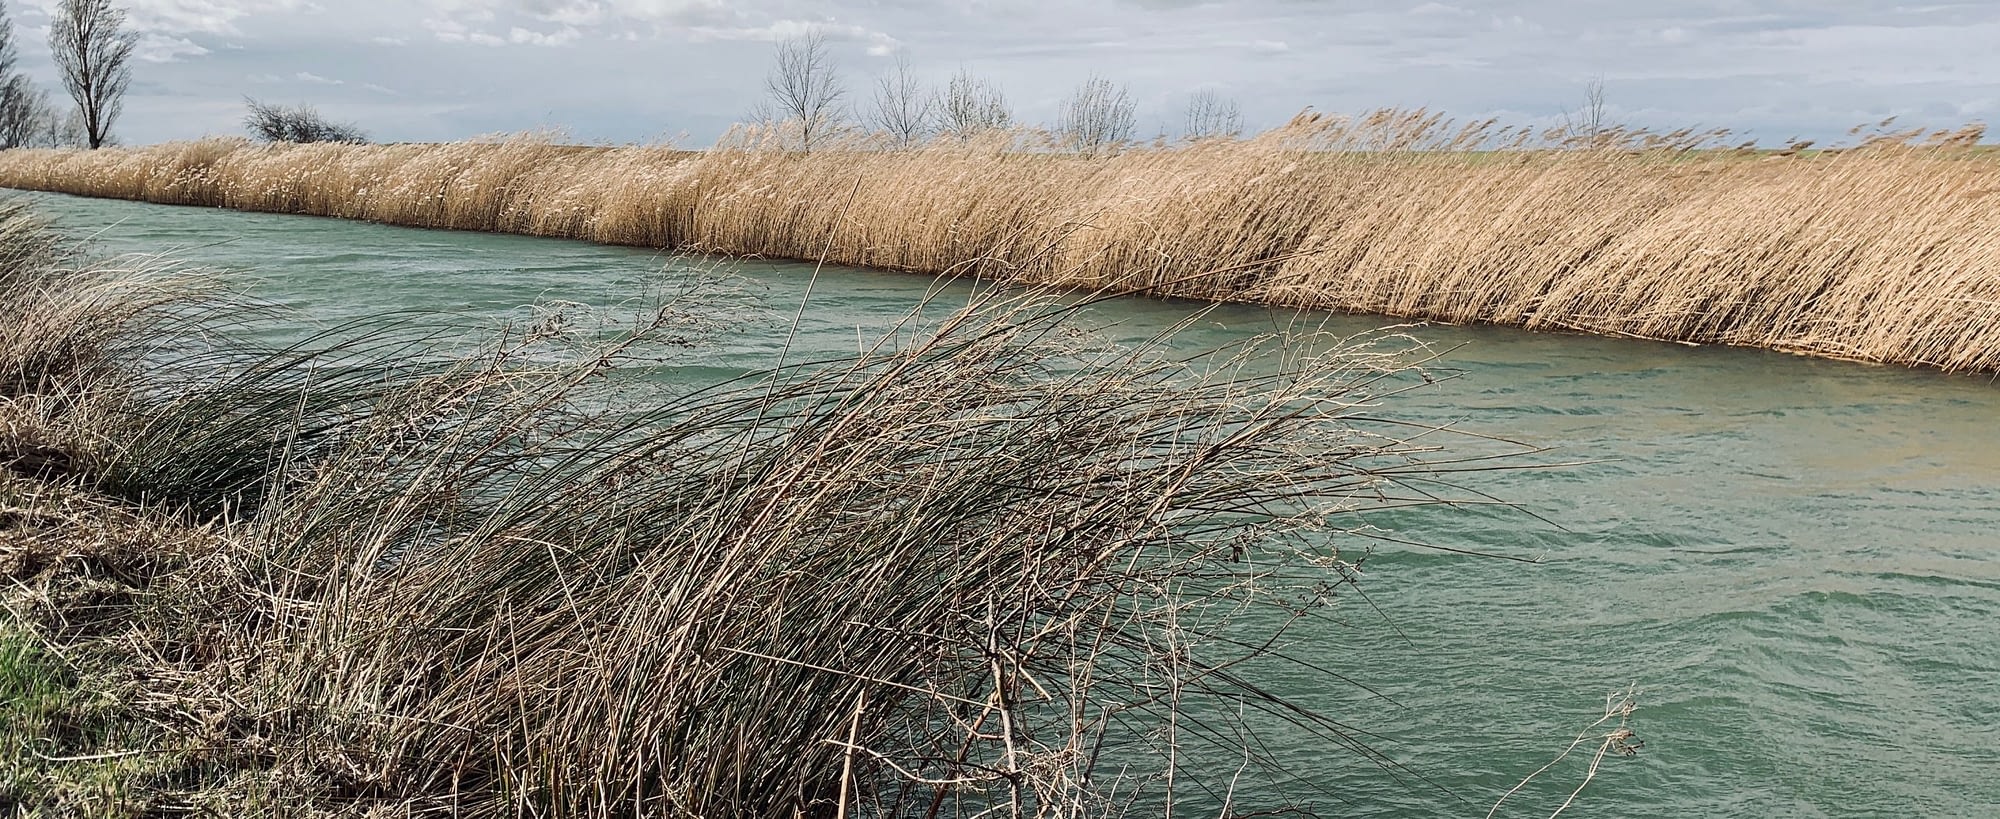 Ein fließender Fluss mit Seegrass am Rande. Durch das fließende Wasser verändert sich das Bild des Flusses. Symbolisch für die Phasen der Veränderung